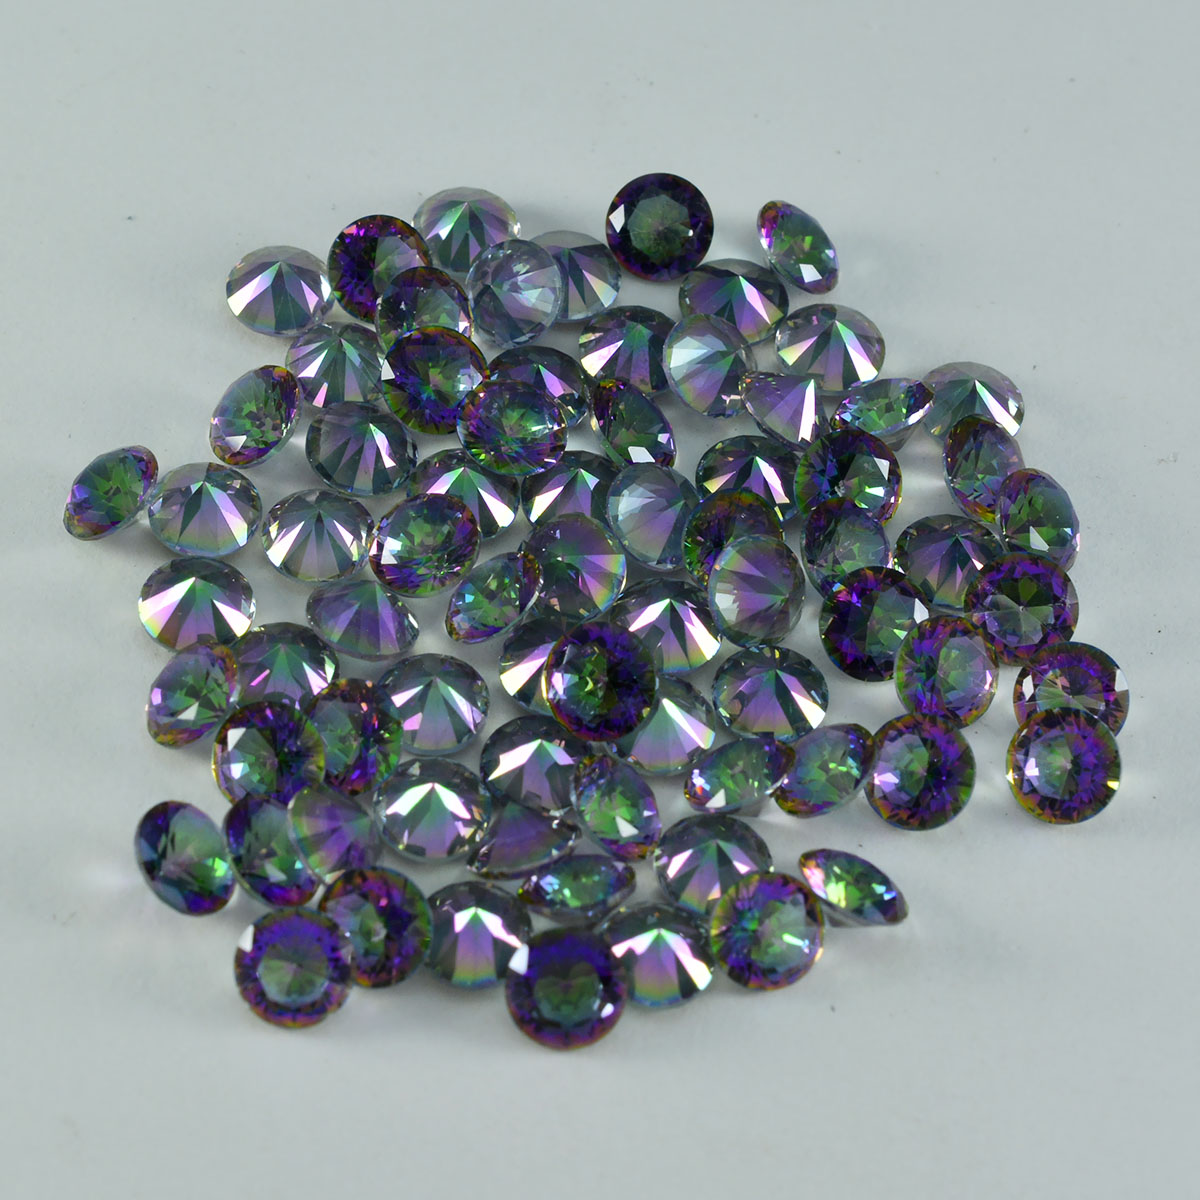 Riyogems 1 pièce de quartz mystique multicolore à facettes 5x5mm forme ronde gemme de superbe qualité